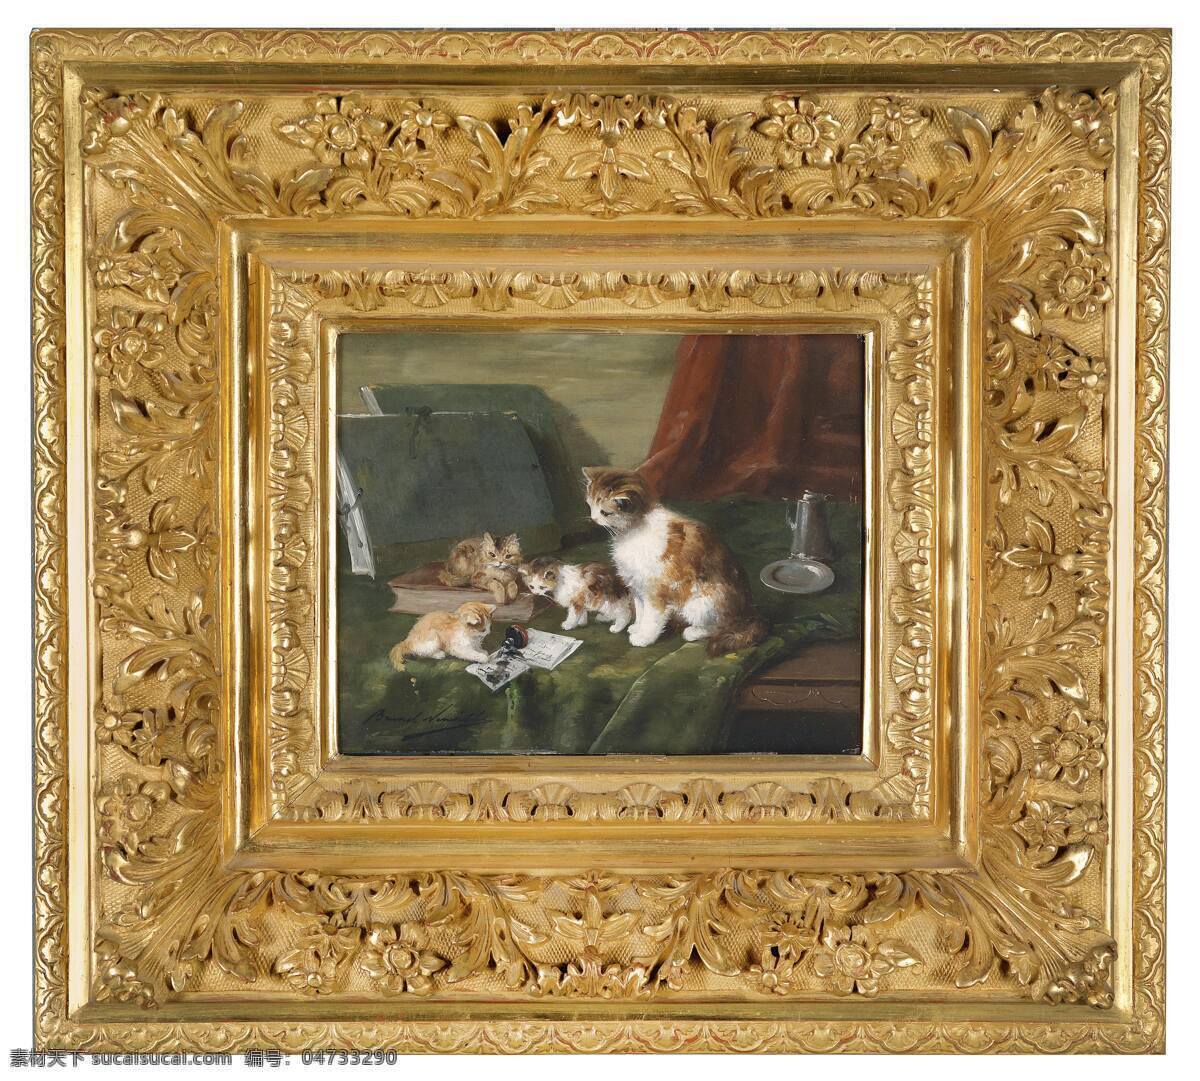 猫儿们 亚瑟183 艾尔弗雷德 德诺183 布鲁 内尔 伊维尔作品 小猫咪 母猫 小猫们在玩耍 19世纪油画 美术绘画 文化艺术